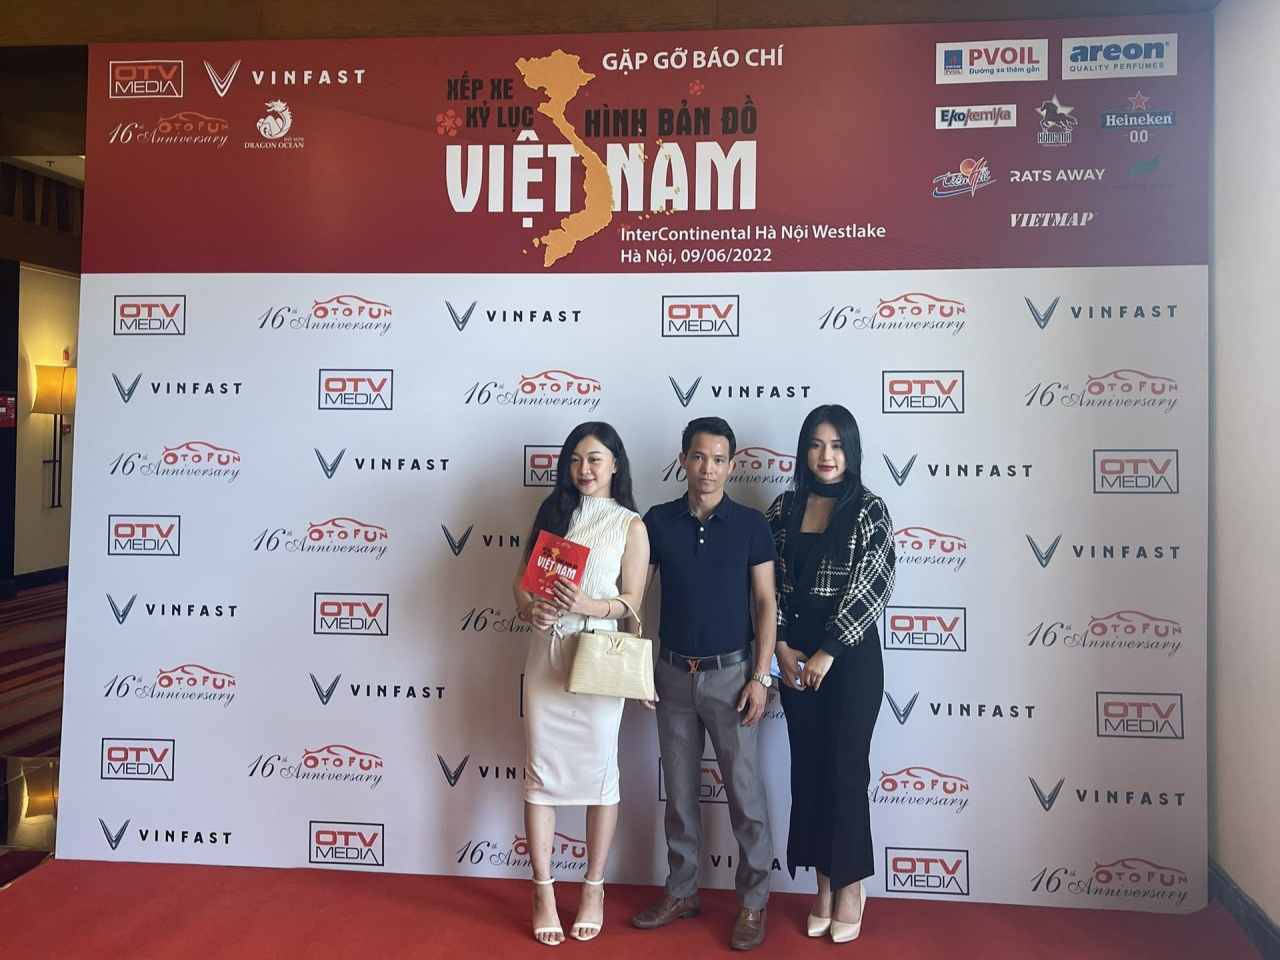 Thành viên tham gia nói gì về sự kiện xếp xe kỷ lục hình bản đồ Việt Nam?